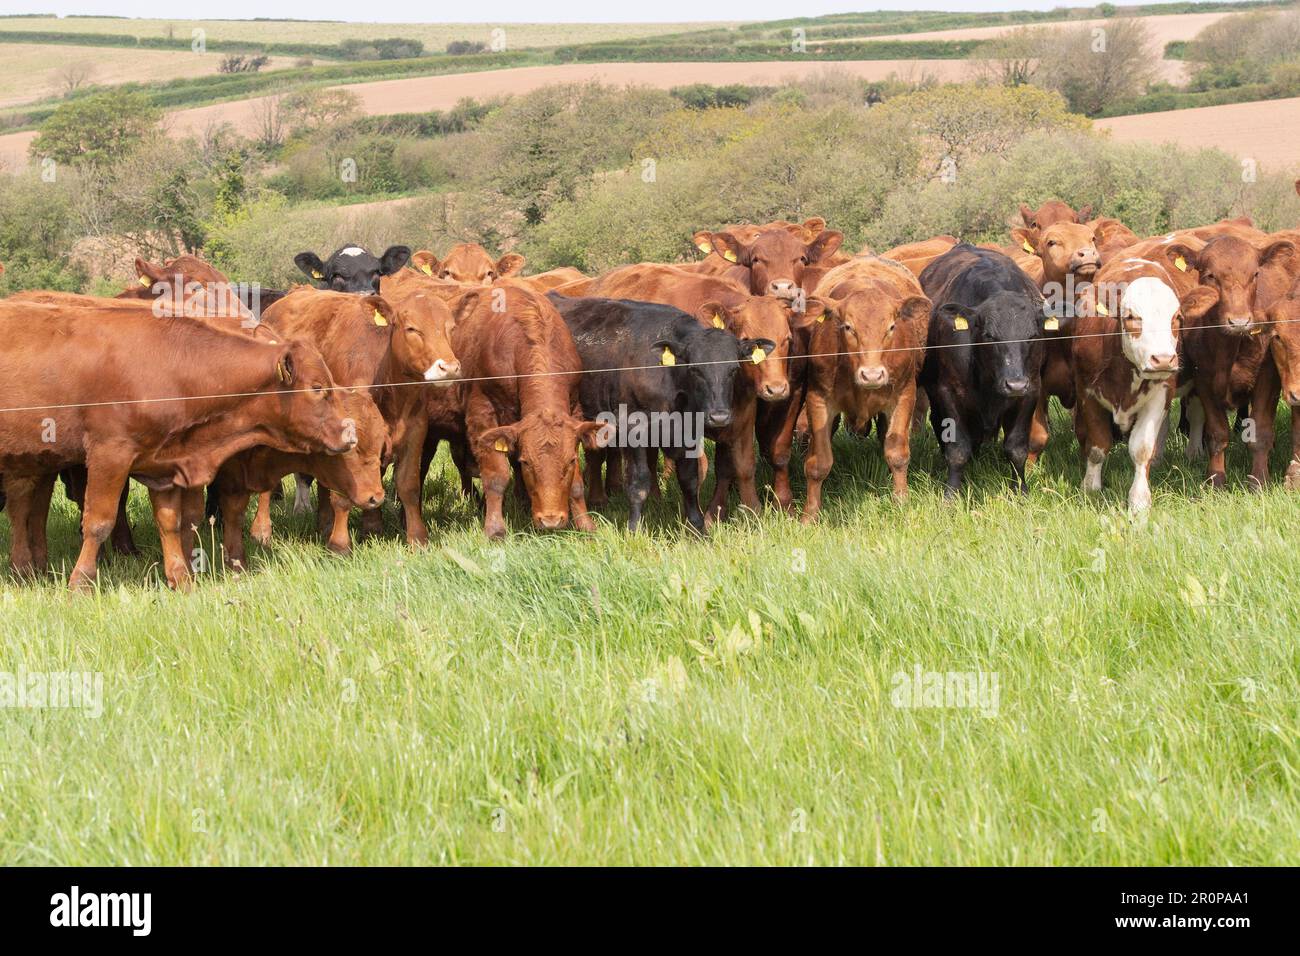 Herd of beef cattle Stock Photo